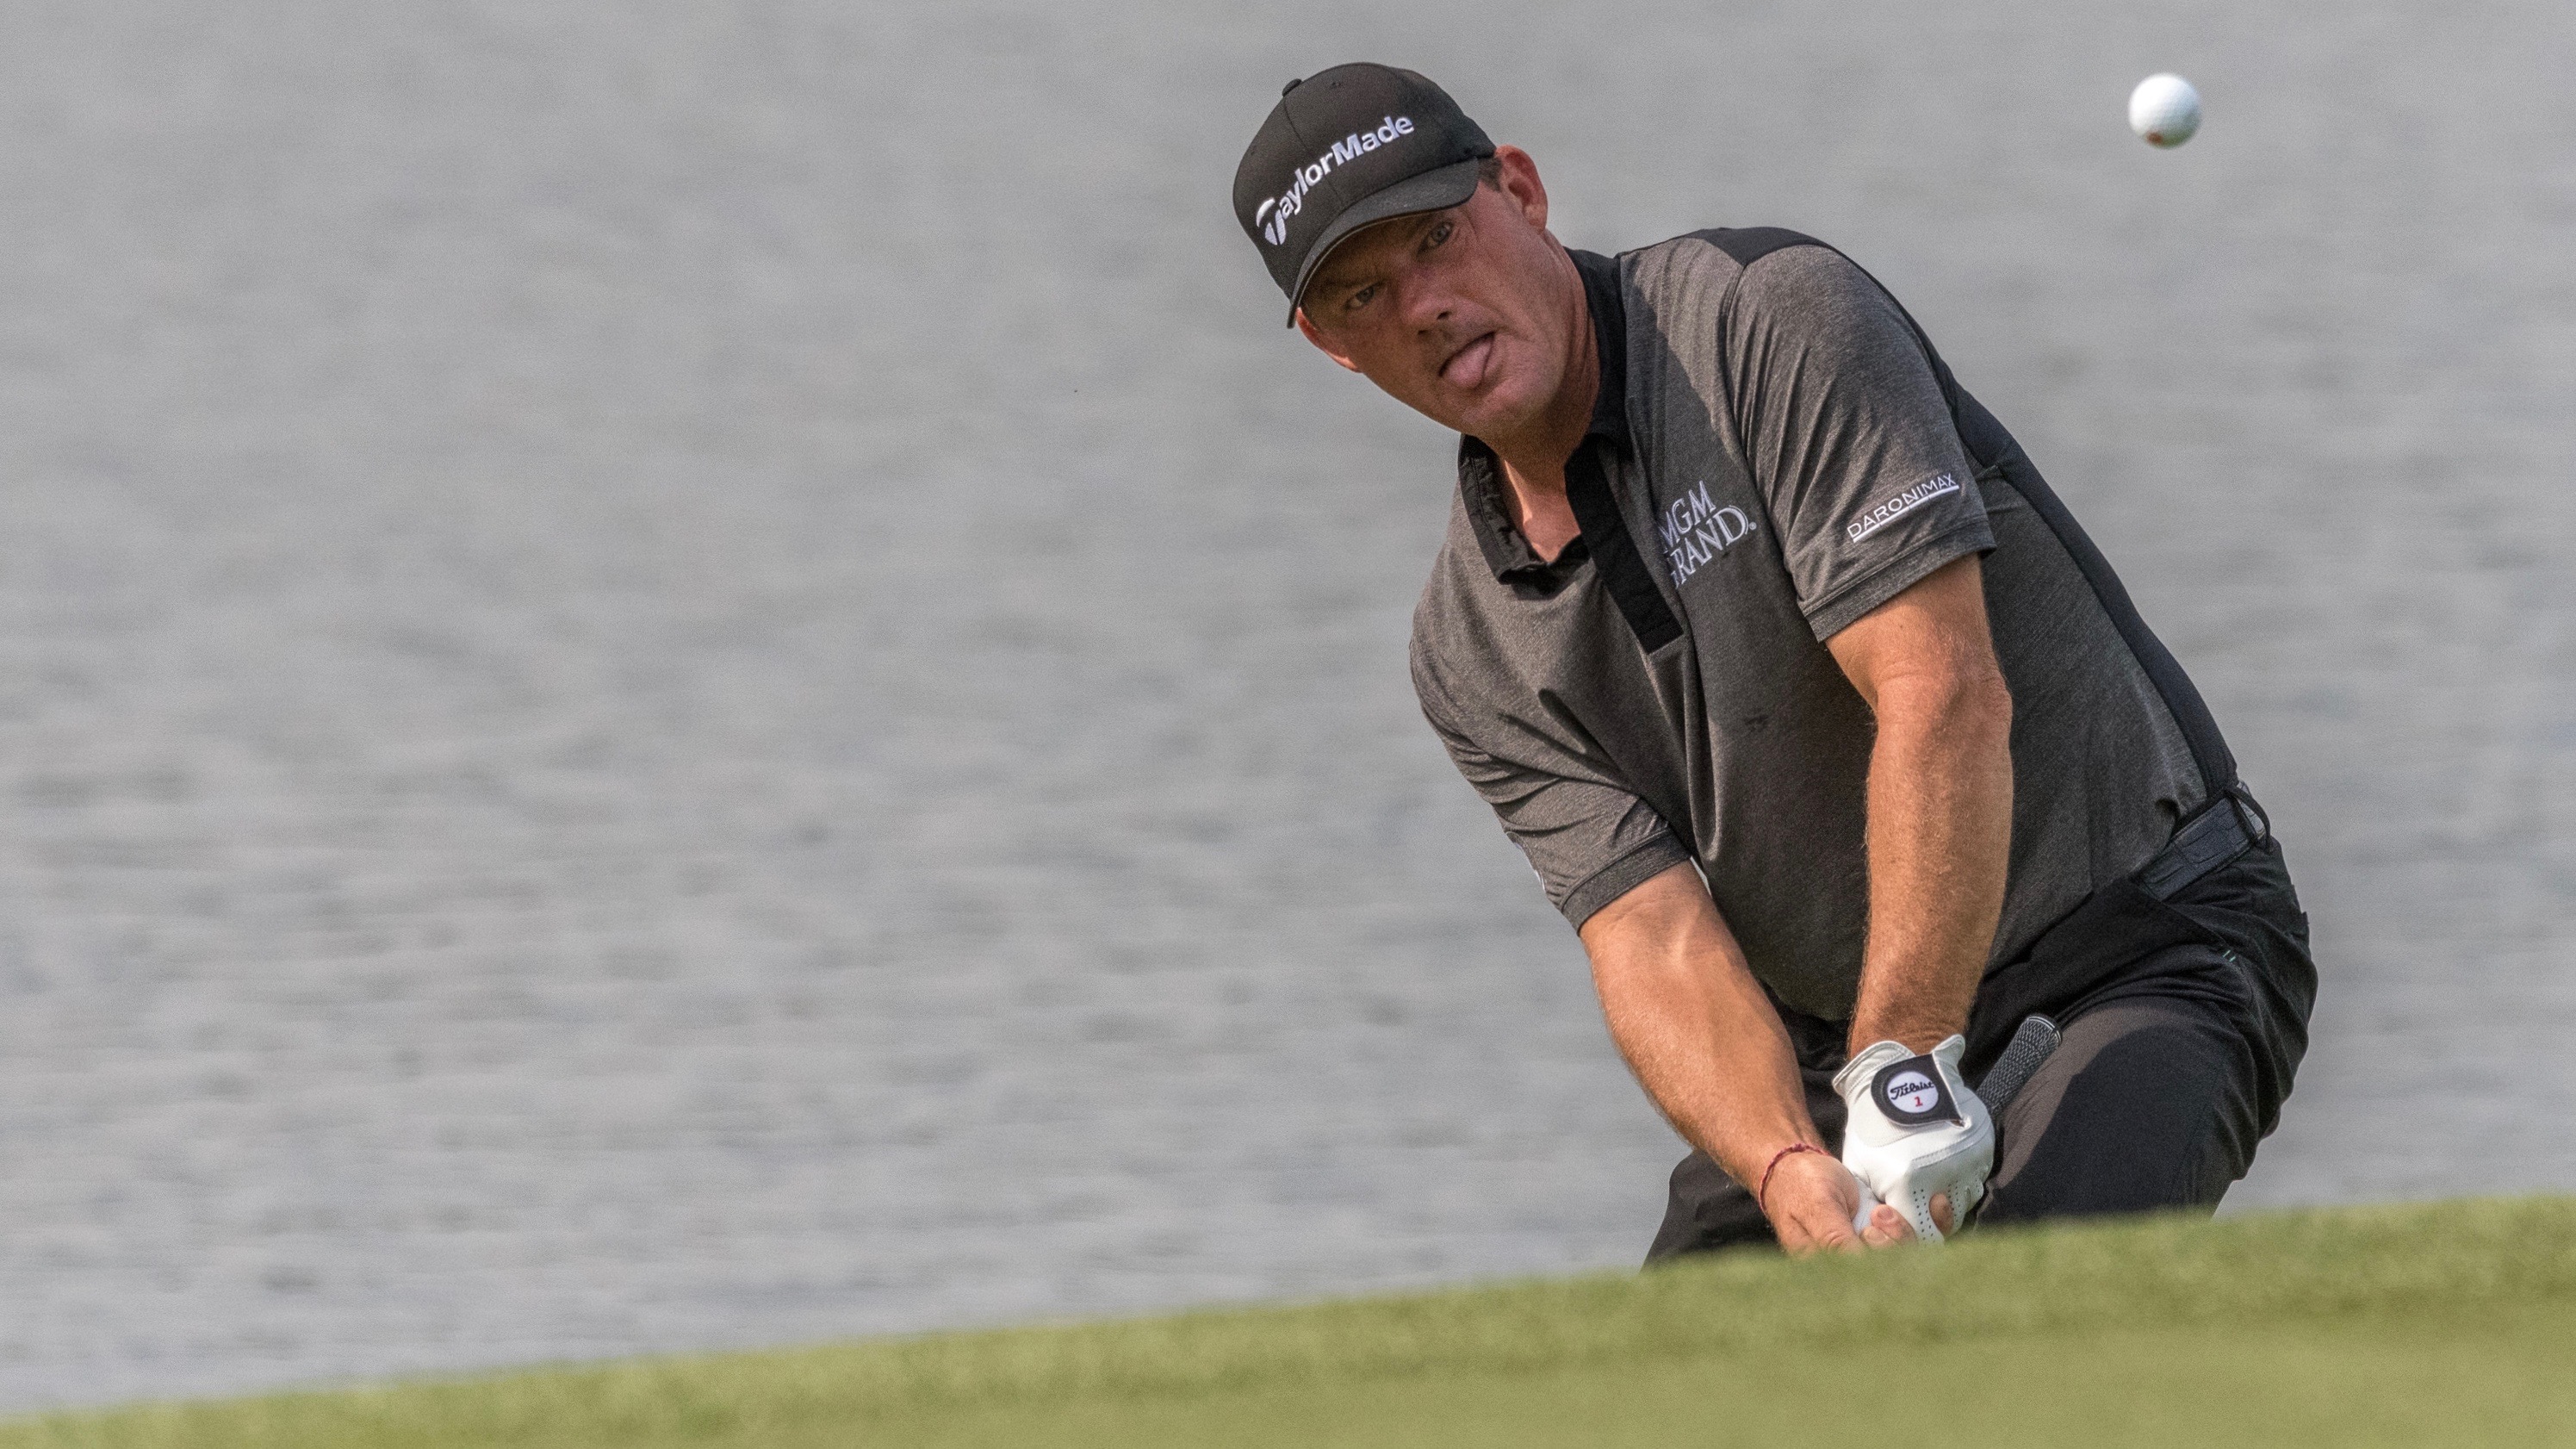 Seit 2021 spielt Alex Cejka auf der PGA Tour Champions. Dort gewann er im ersten Jahr zwei Major-Turniere.